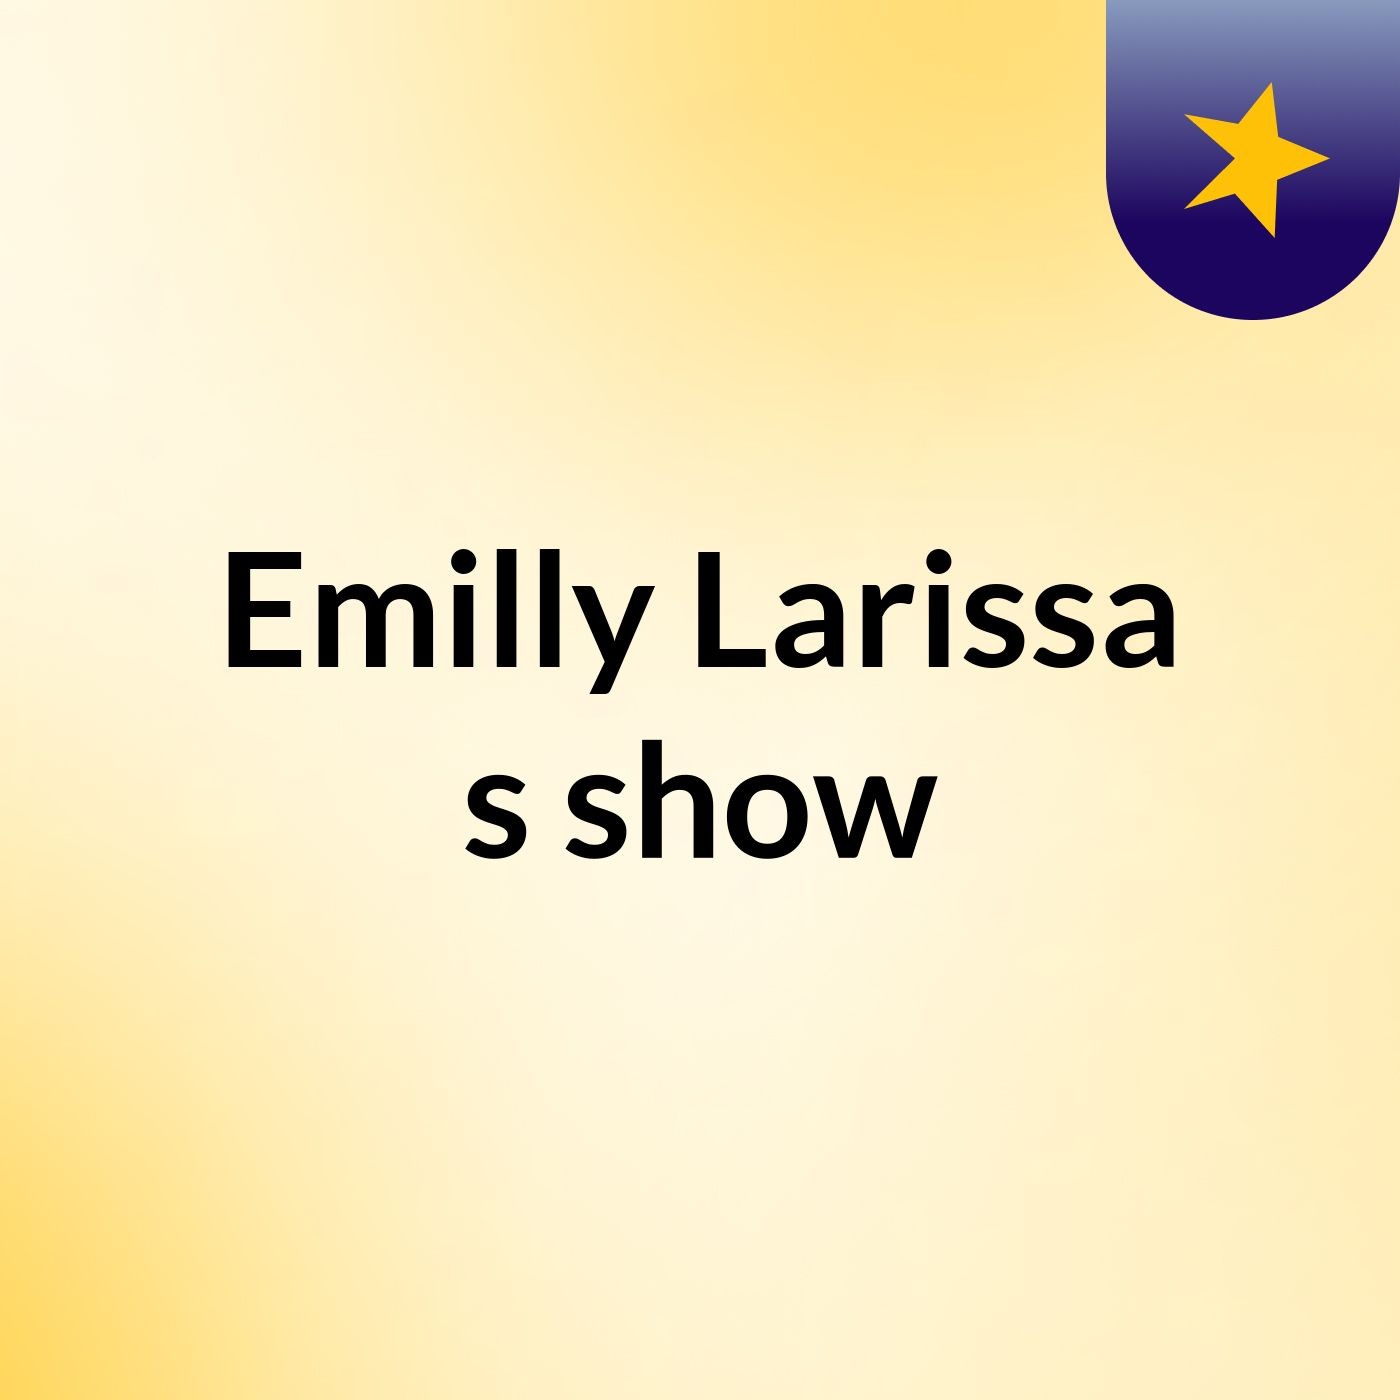 Emilly Larissa's show